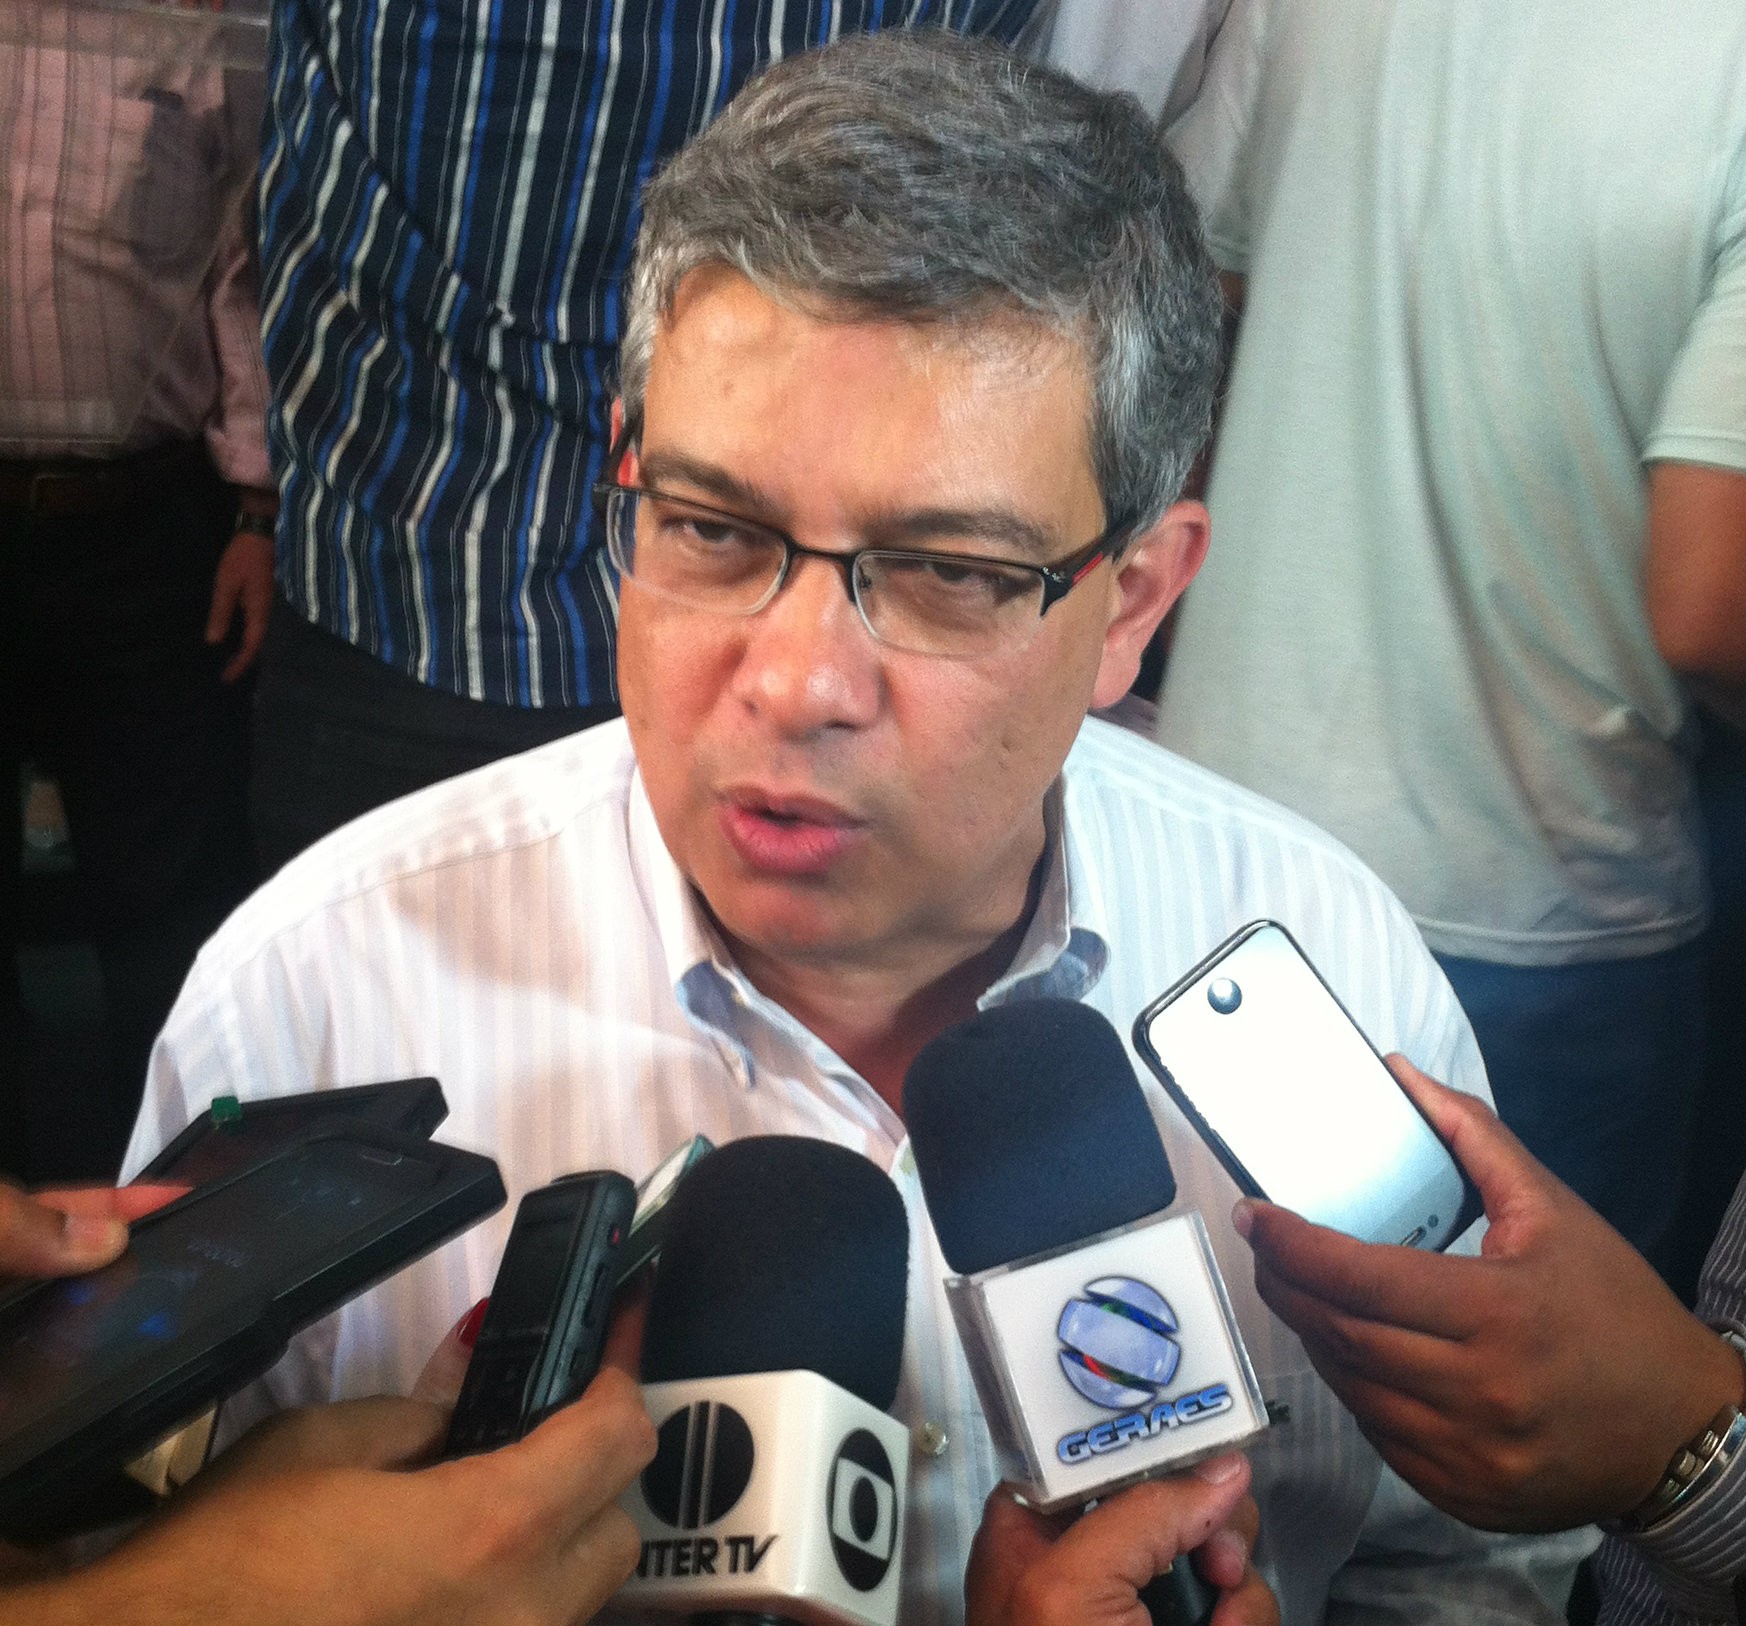 Candidato ao governo de Minas Gerais, Marcus Pestana declara patrimônio de R$ 1,4 milhão